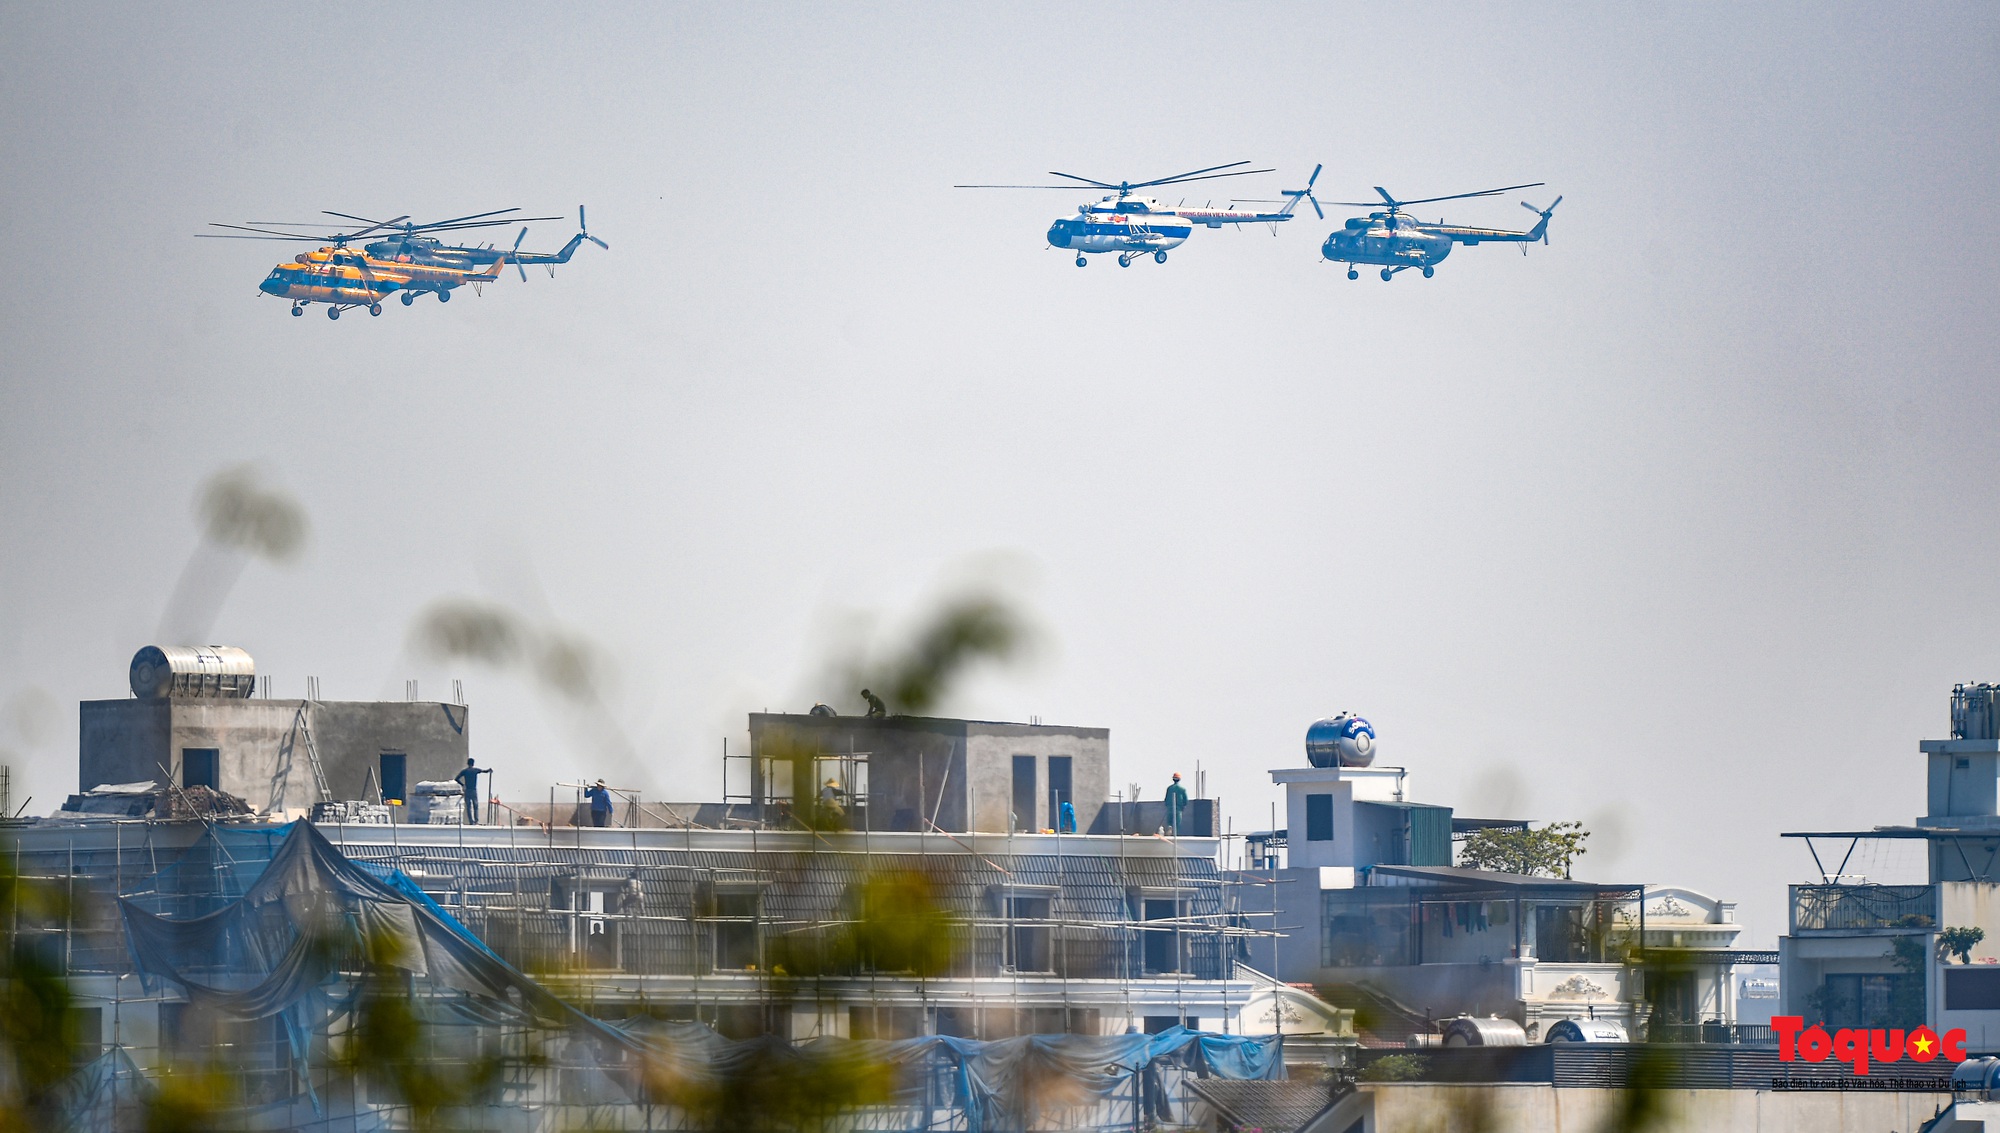 Mãn nhãn với  máy bay chiến đấu Sukhoi và trực thăng Mi thao diễn trên bầu trời Thủ đô Hà Nội - Ảnh 2.